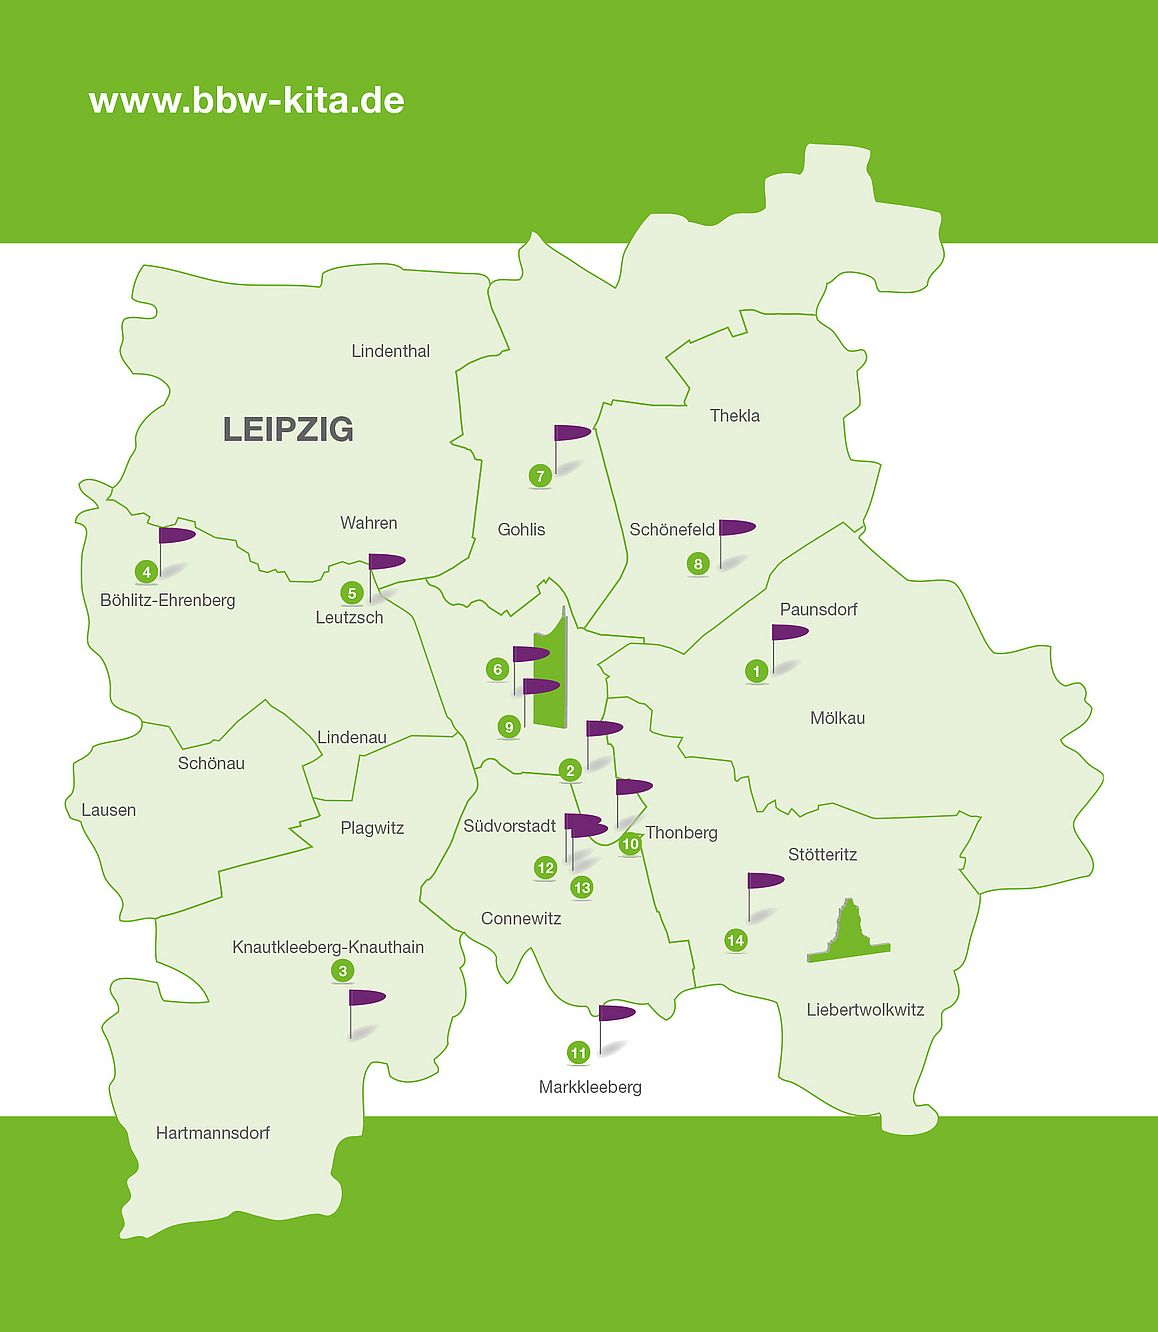 Übersichtskarte von Leipzig mit eingezeichneten BBW-Kita-Standorten